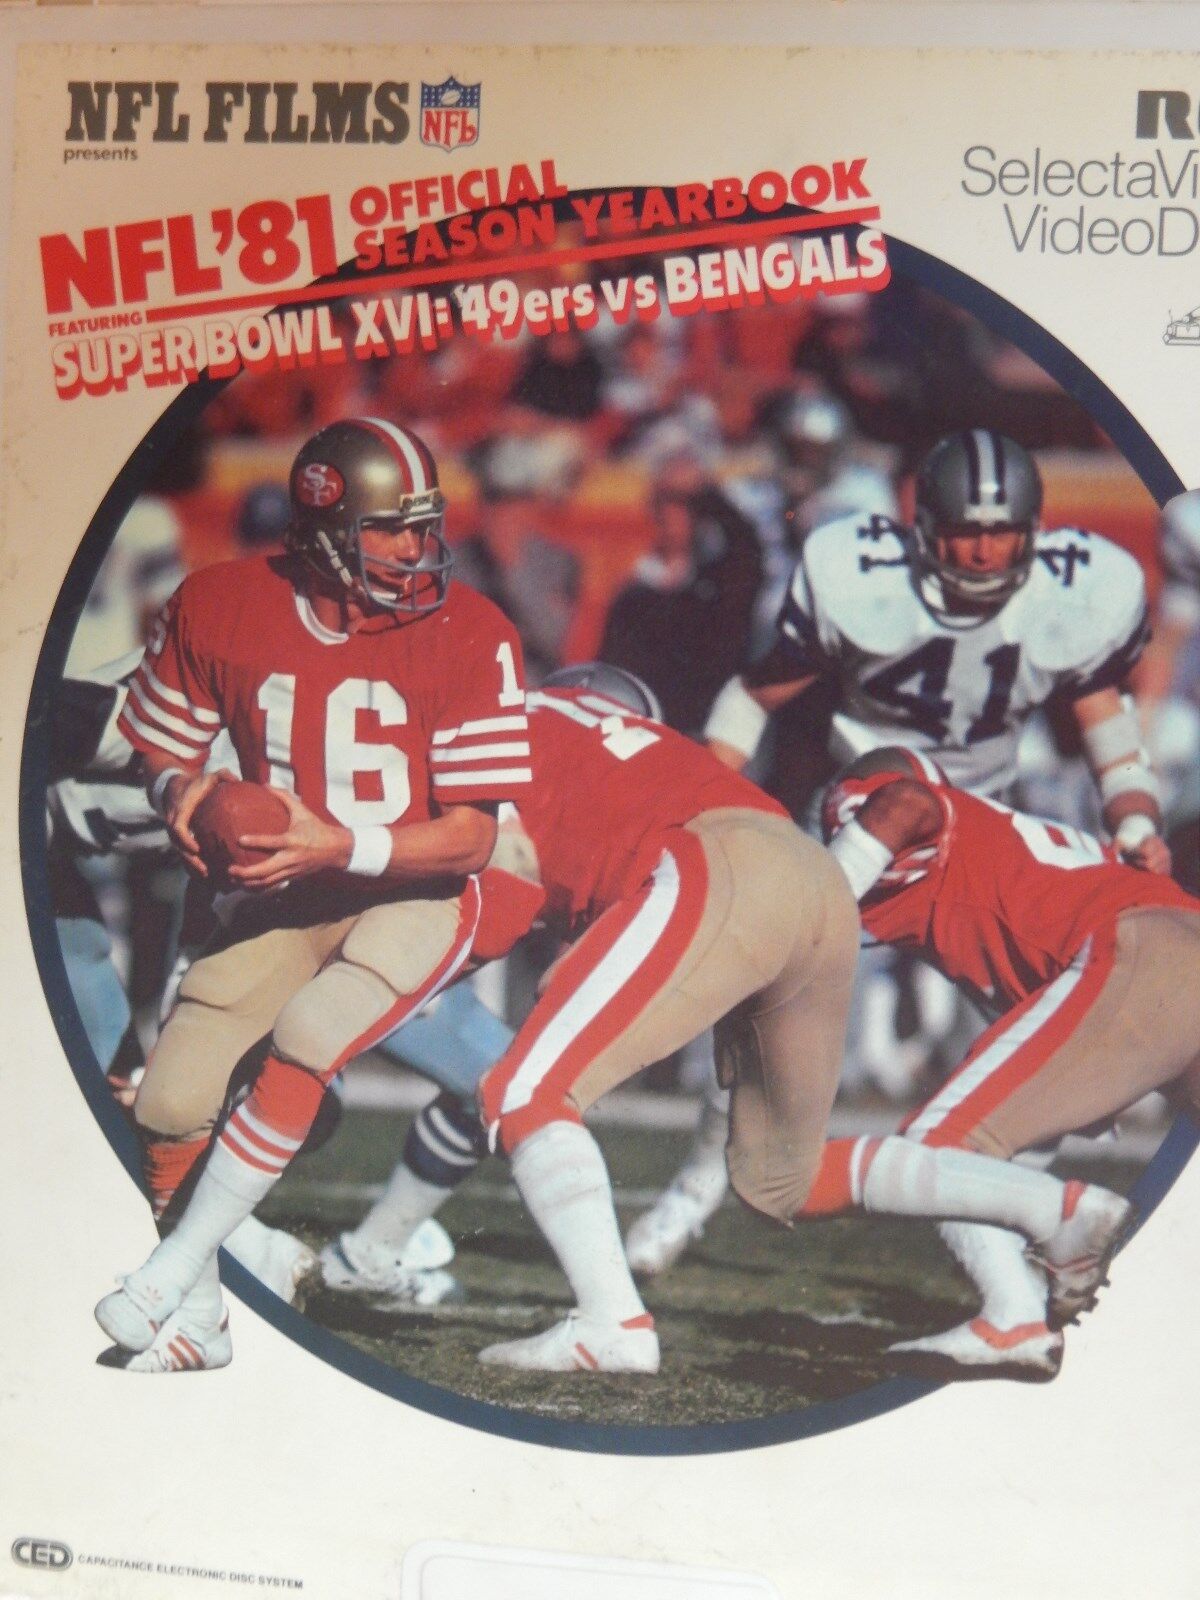 NFL 81 Super Bowl XVL 49 ers vs Bengals  CED Video Disc